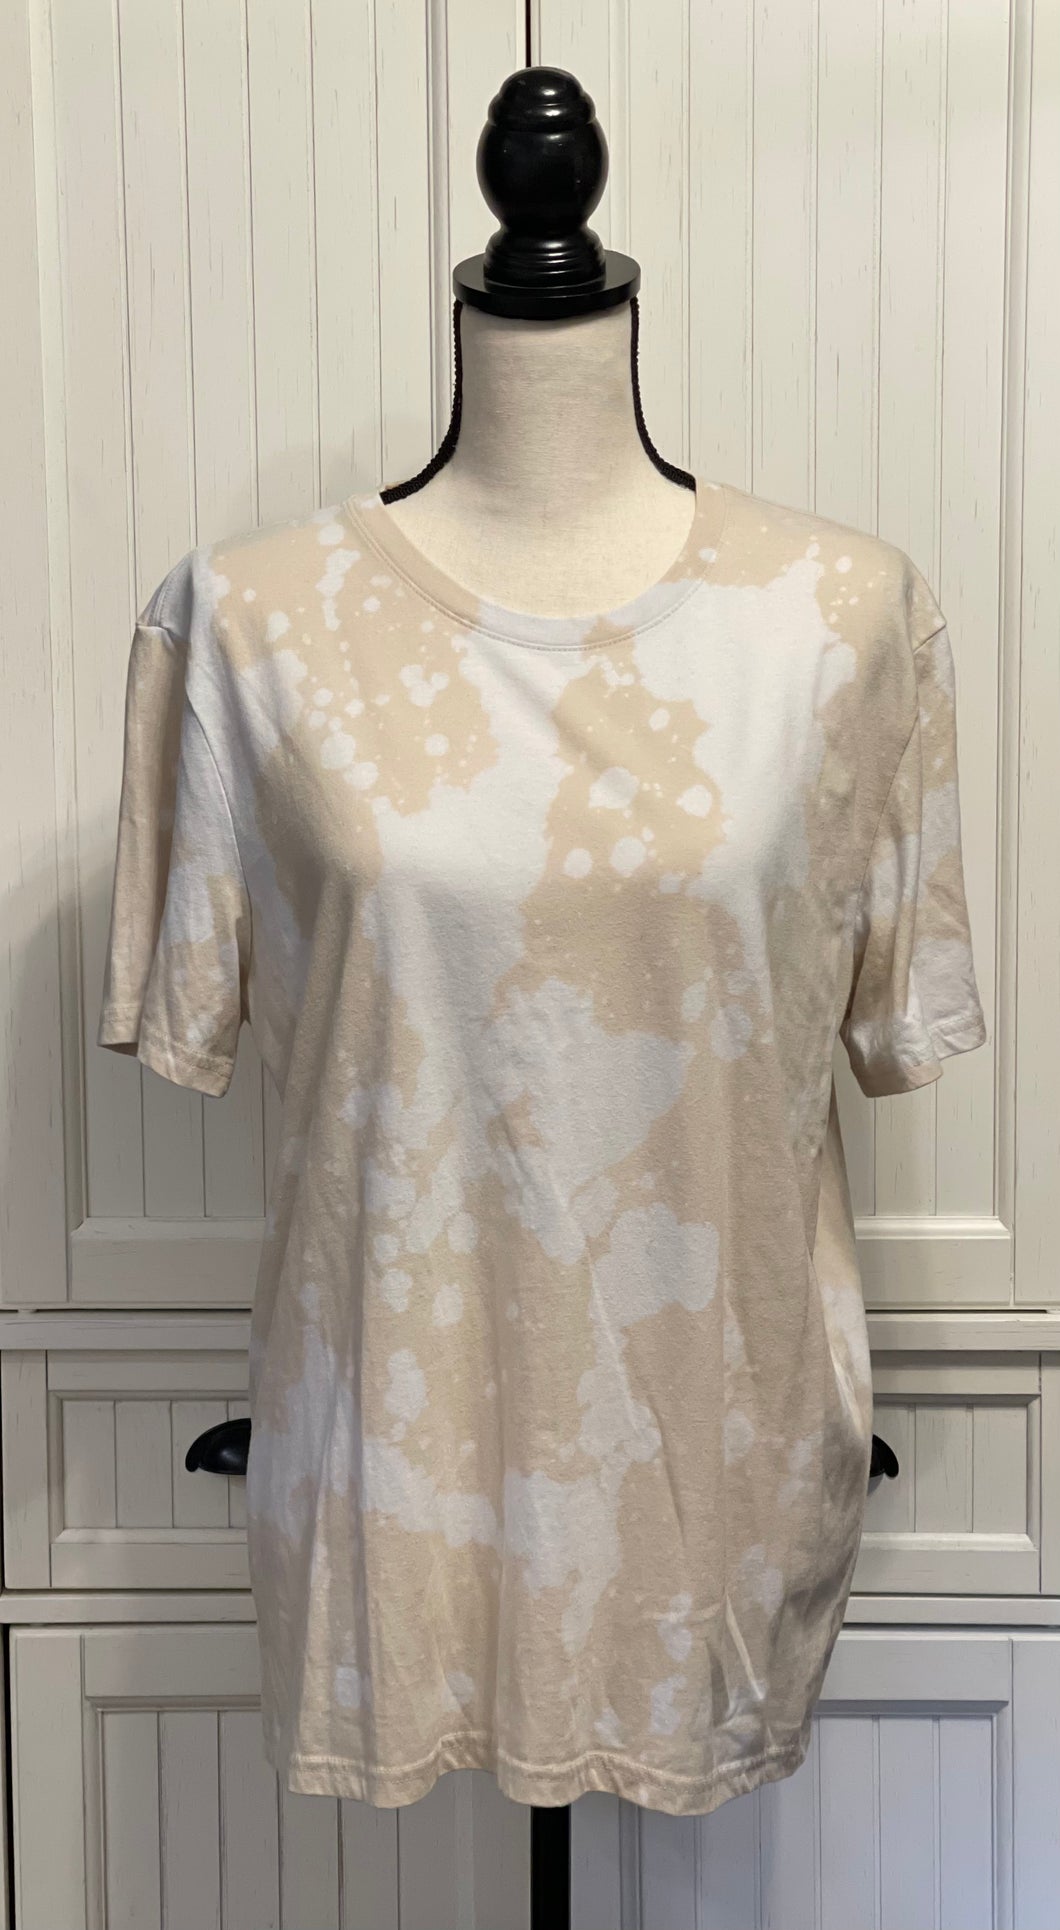 July Distressed Short Sleeve Shirt ~ Unisex Size Large